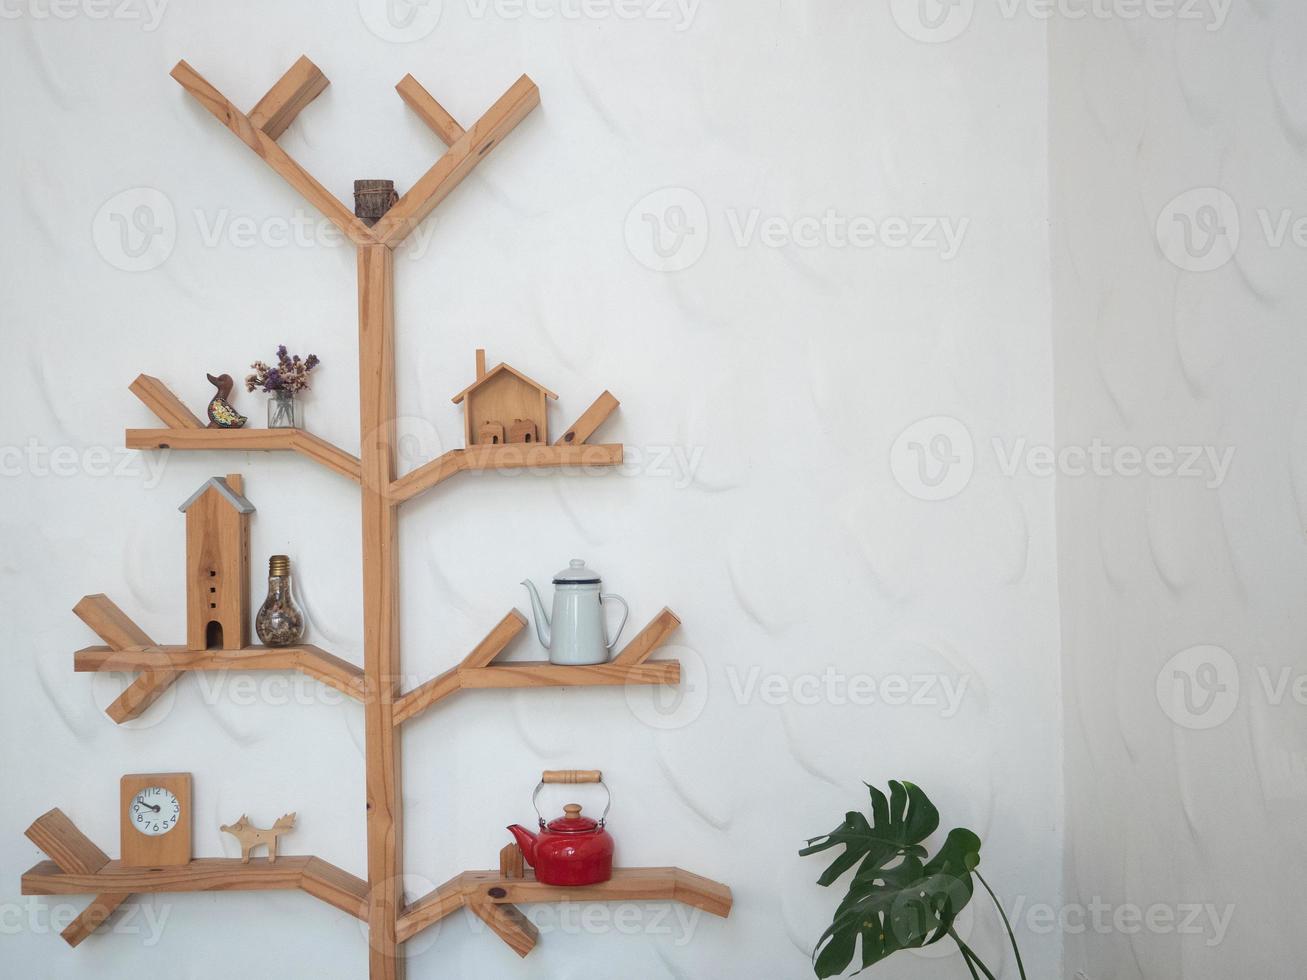 estilo minimalista de prateleira de madeira no espaço de cópia de parede branca da sala foto